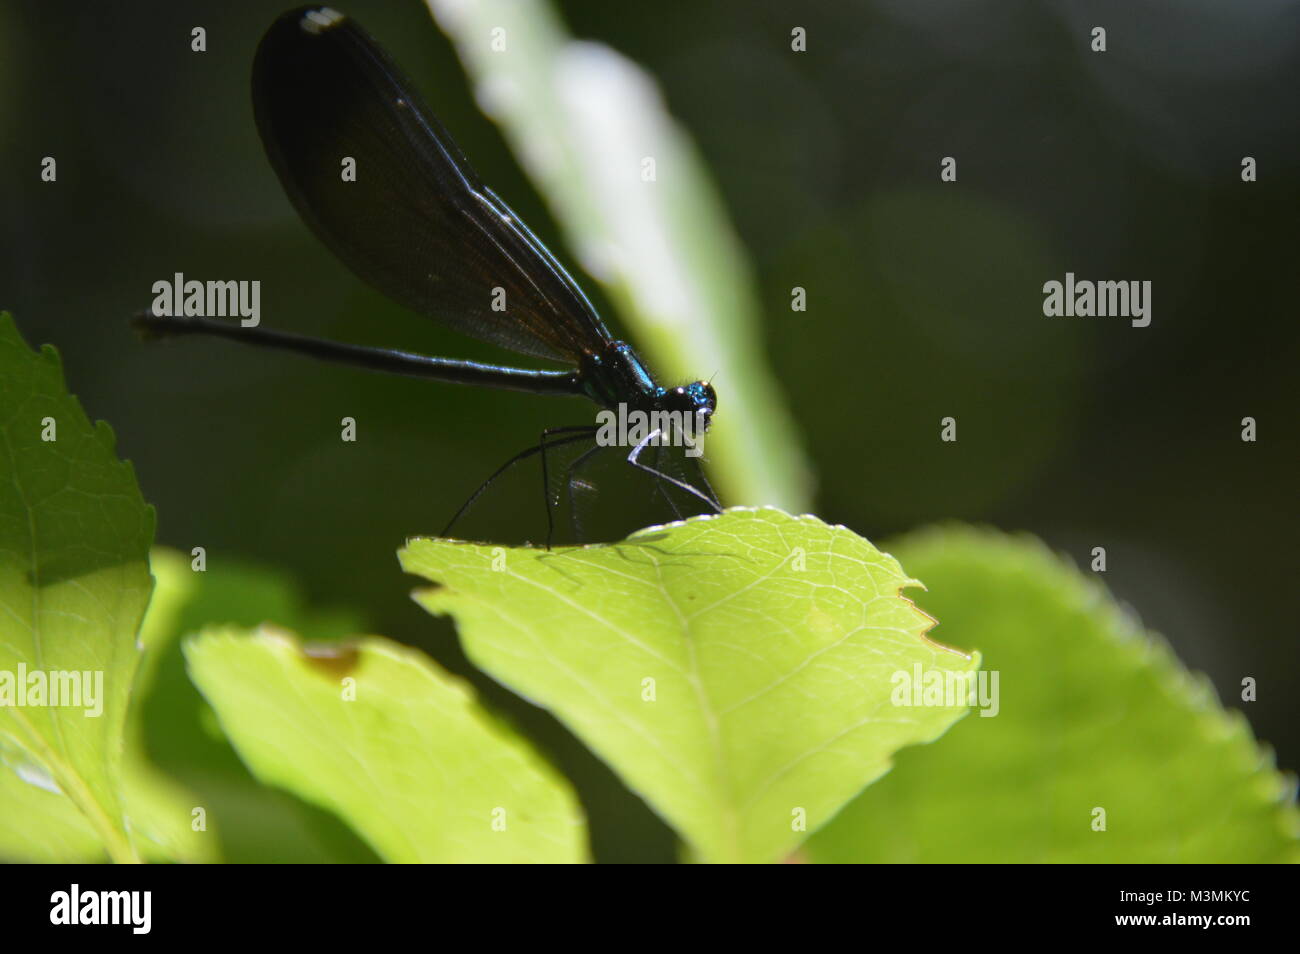 Ein dunkles Blau mayfly sitzt auf einem grünen Blatt mit grünem Laub (unscharf) im Hintergrund des Bildes. In Great Falls, VA genommen Stockfoto